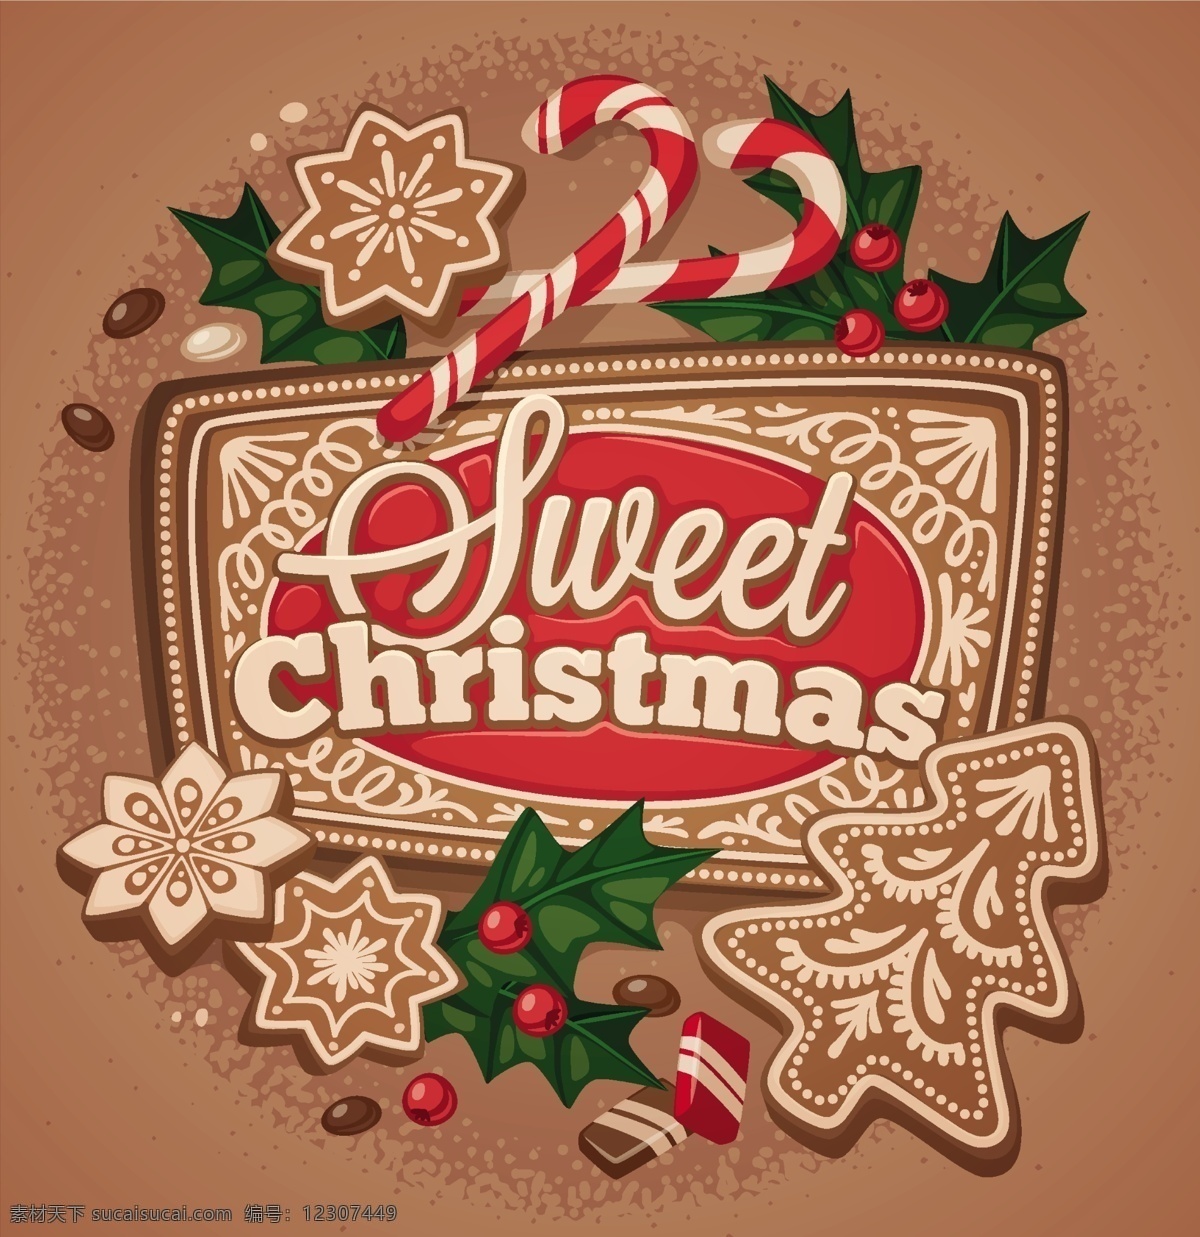 矢量图 甜蜜 圣诞 促销海报 复古风格 古典装饰图案 圣诞树 七彩拐杖 平面广告 装饰设计 节日素材 圣诞节